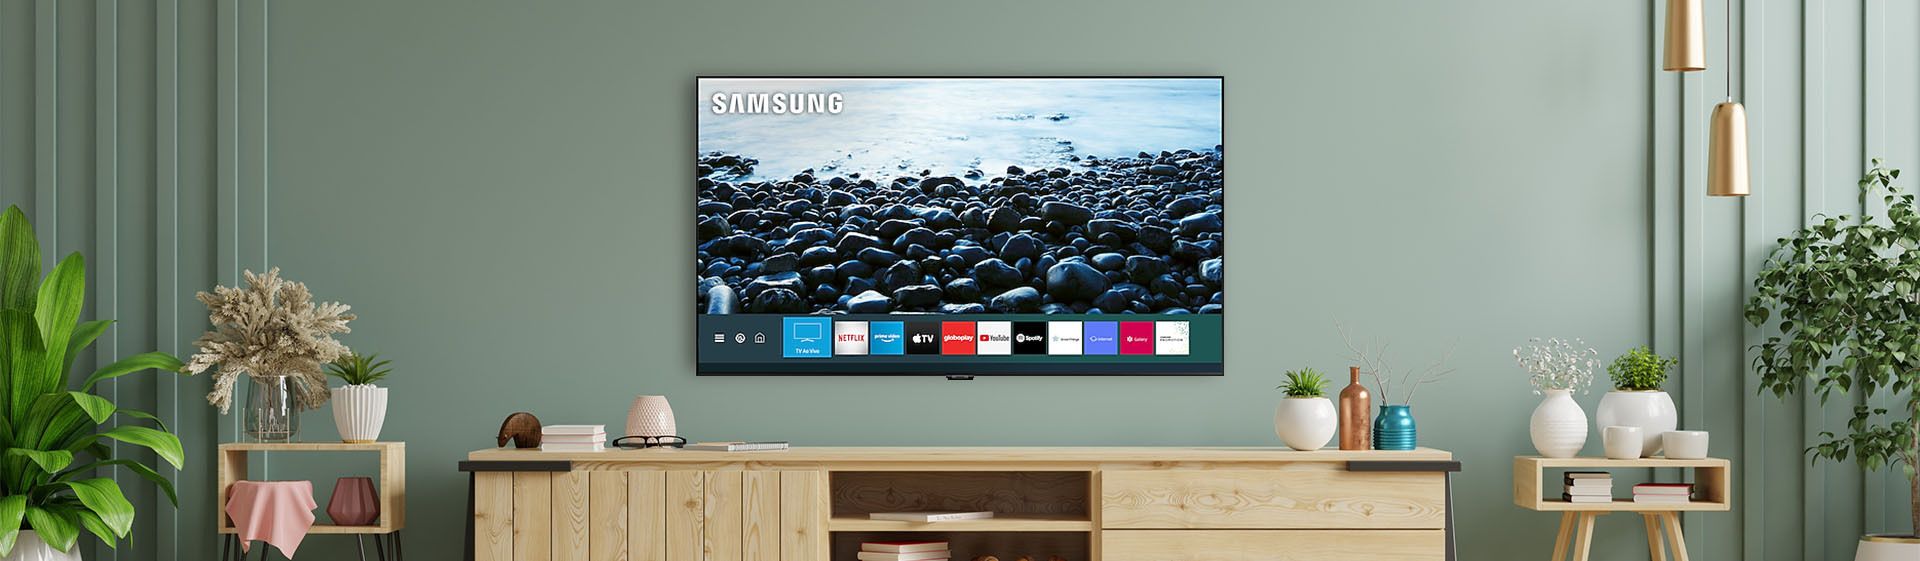 Capa do post: TV Samsung Q80T: conheça a Smart TV QLED com 120 Hz de frequência nativa